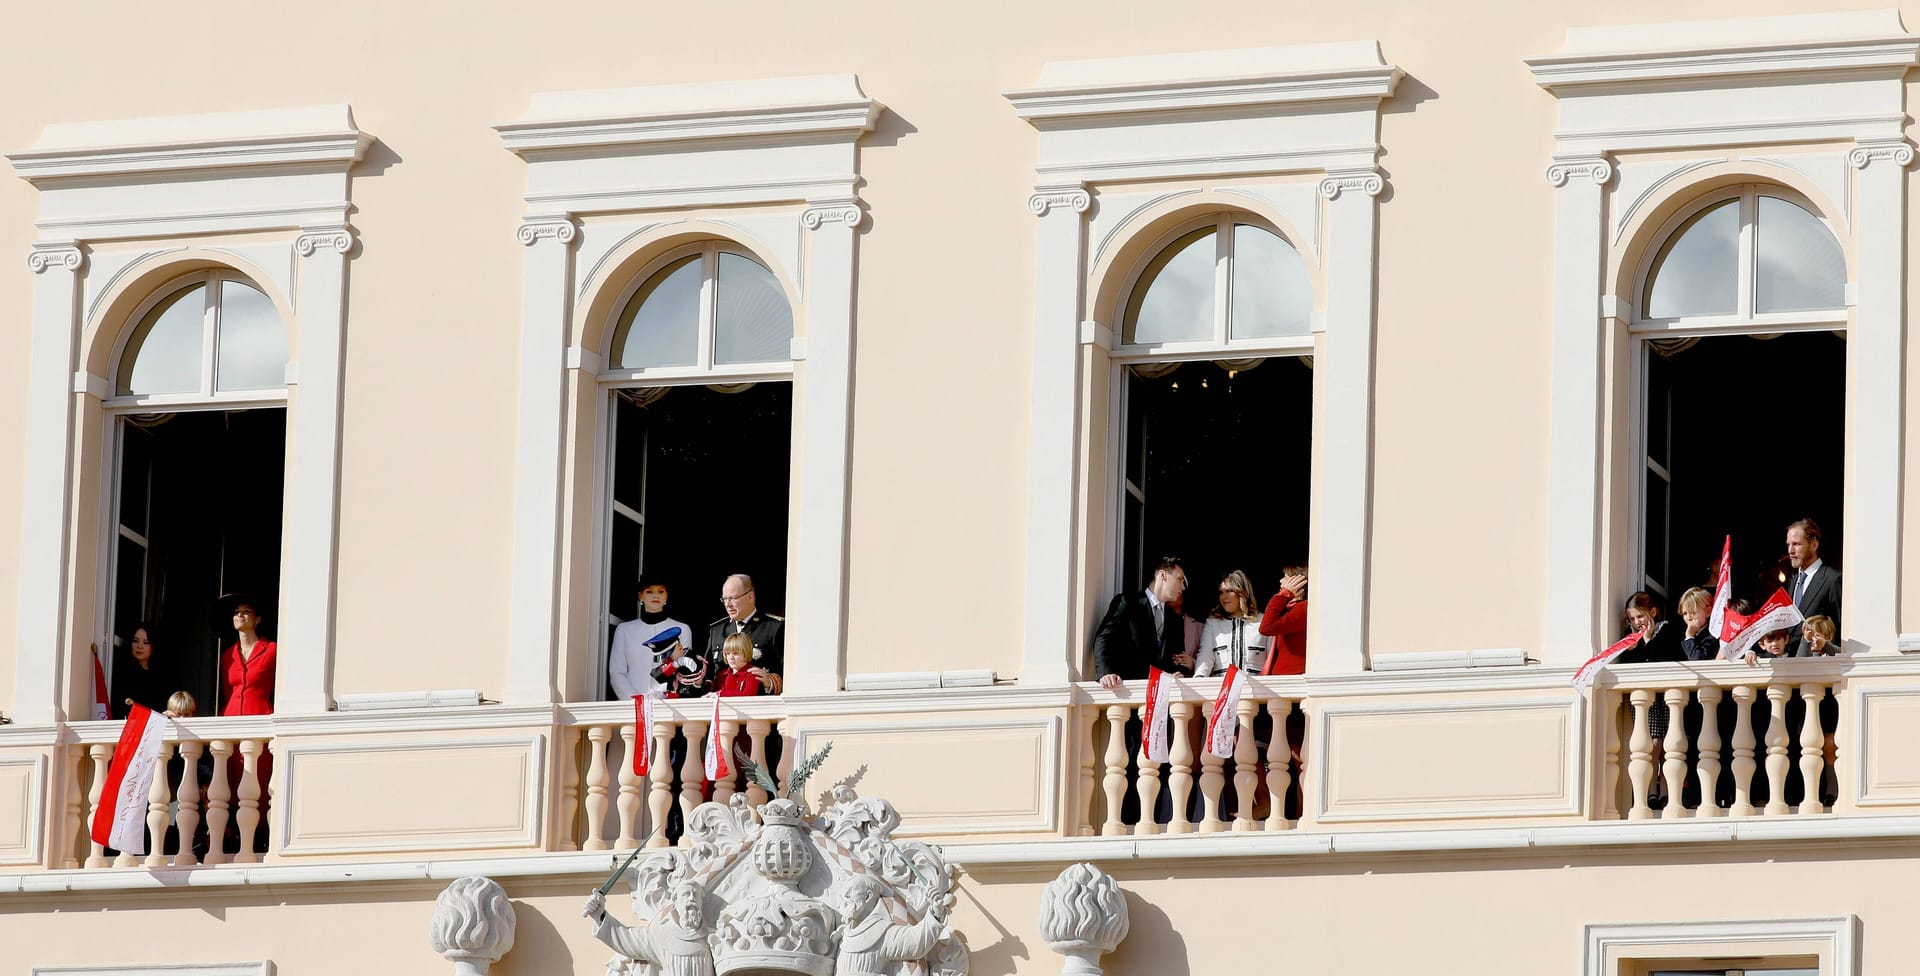 Die Royals zeigen sich am Balkon.